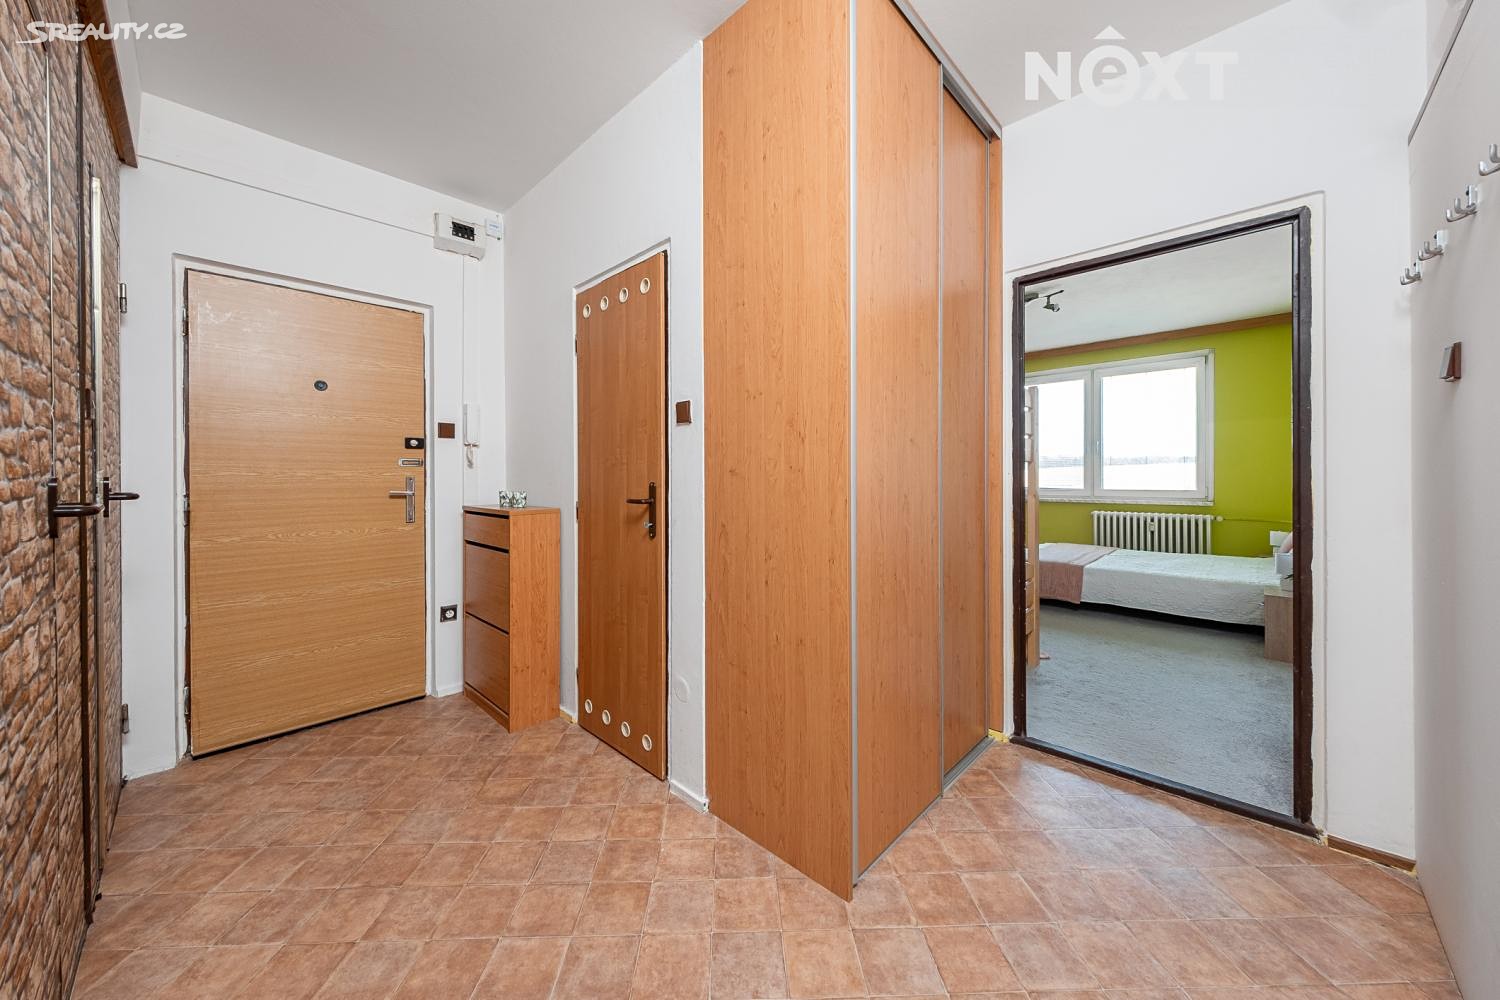 Prodej bytu 2+1 59 m², Felberova, Svitavy - Lány